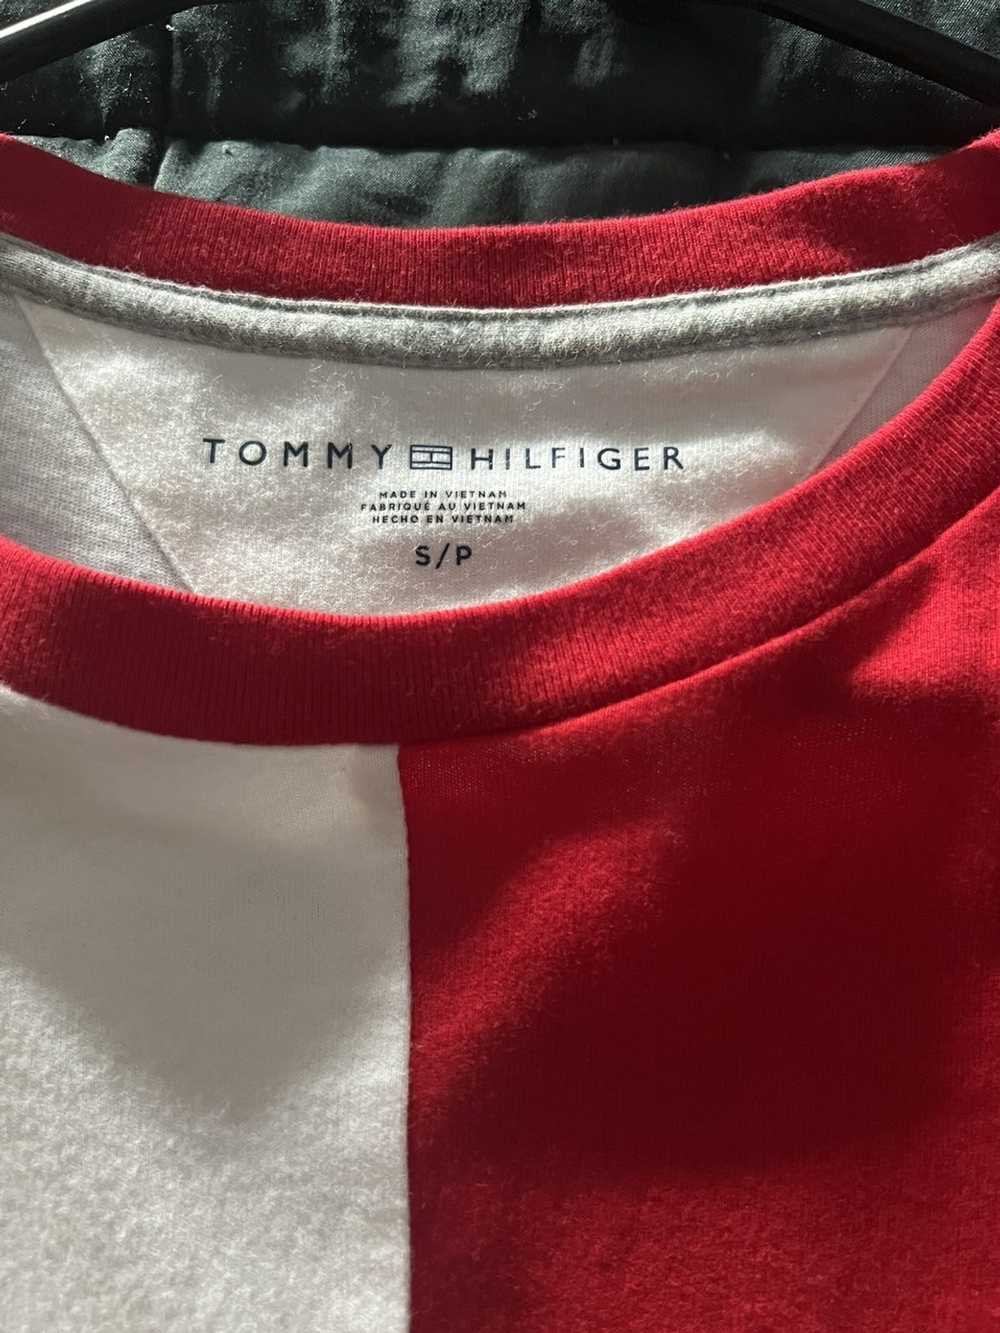 Tommy Hilfiger Tommy Hilfiger T-Shirt - image 2